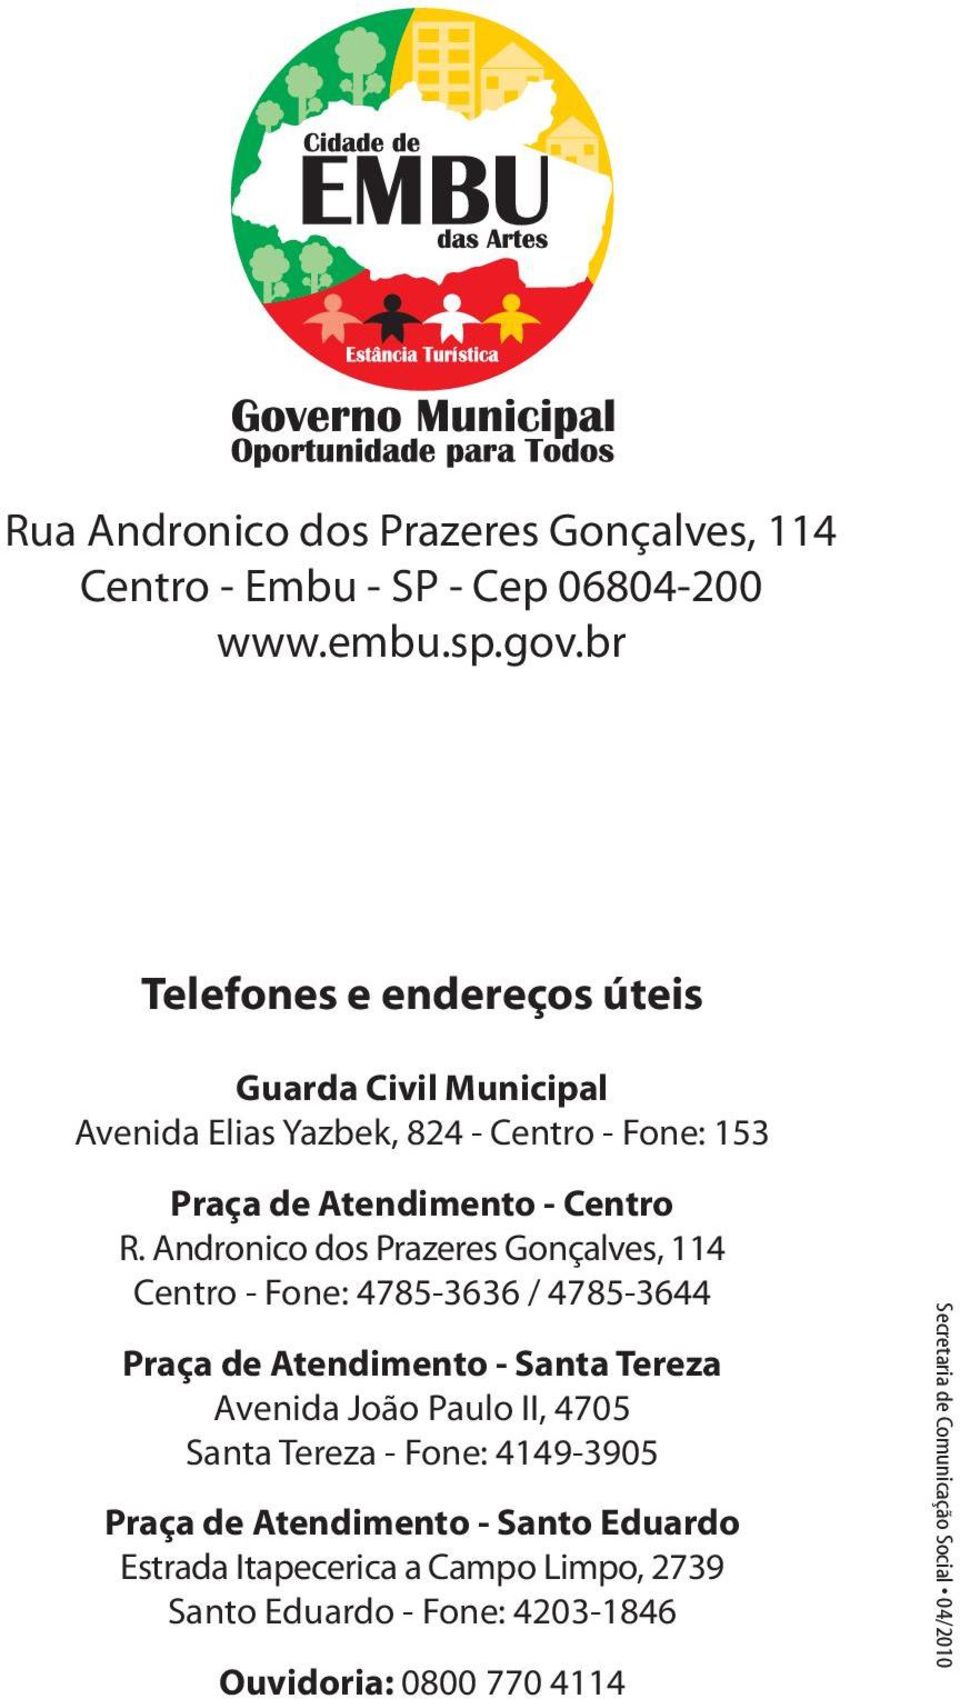 Andronico dos Prazeres Gonçalves, 114 Centro - Fone: 4785-3636 / 4785-3644 Praça de Atendimento - Santa Tereza Avenida João Paulo II, 4705